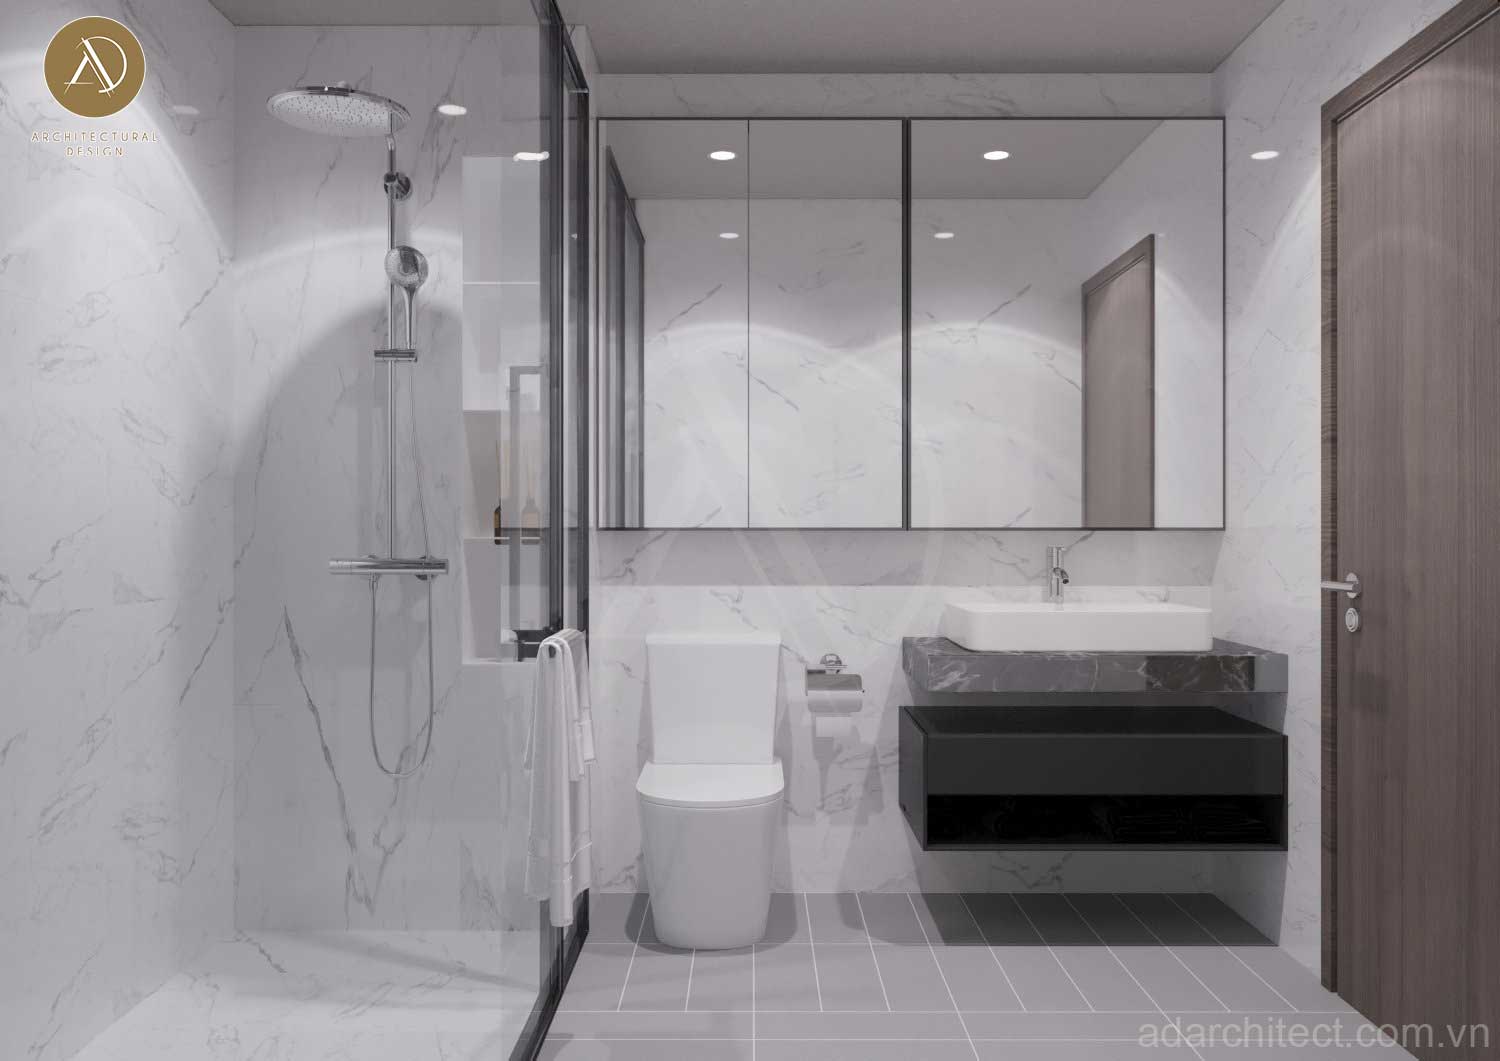 mẫu nhà ở kết hợp kinh doanh: thiết kế phòng vệ sinh hiện đại, tối giản